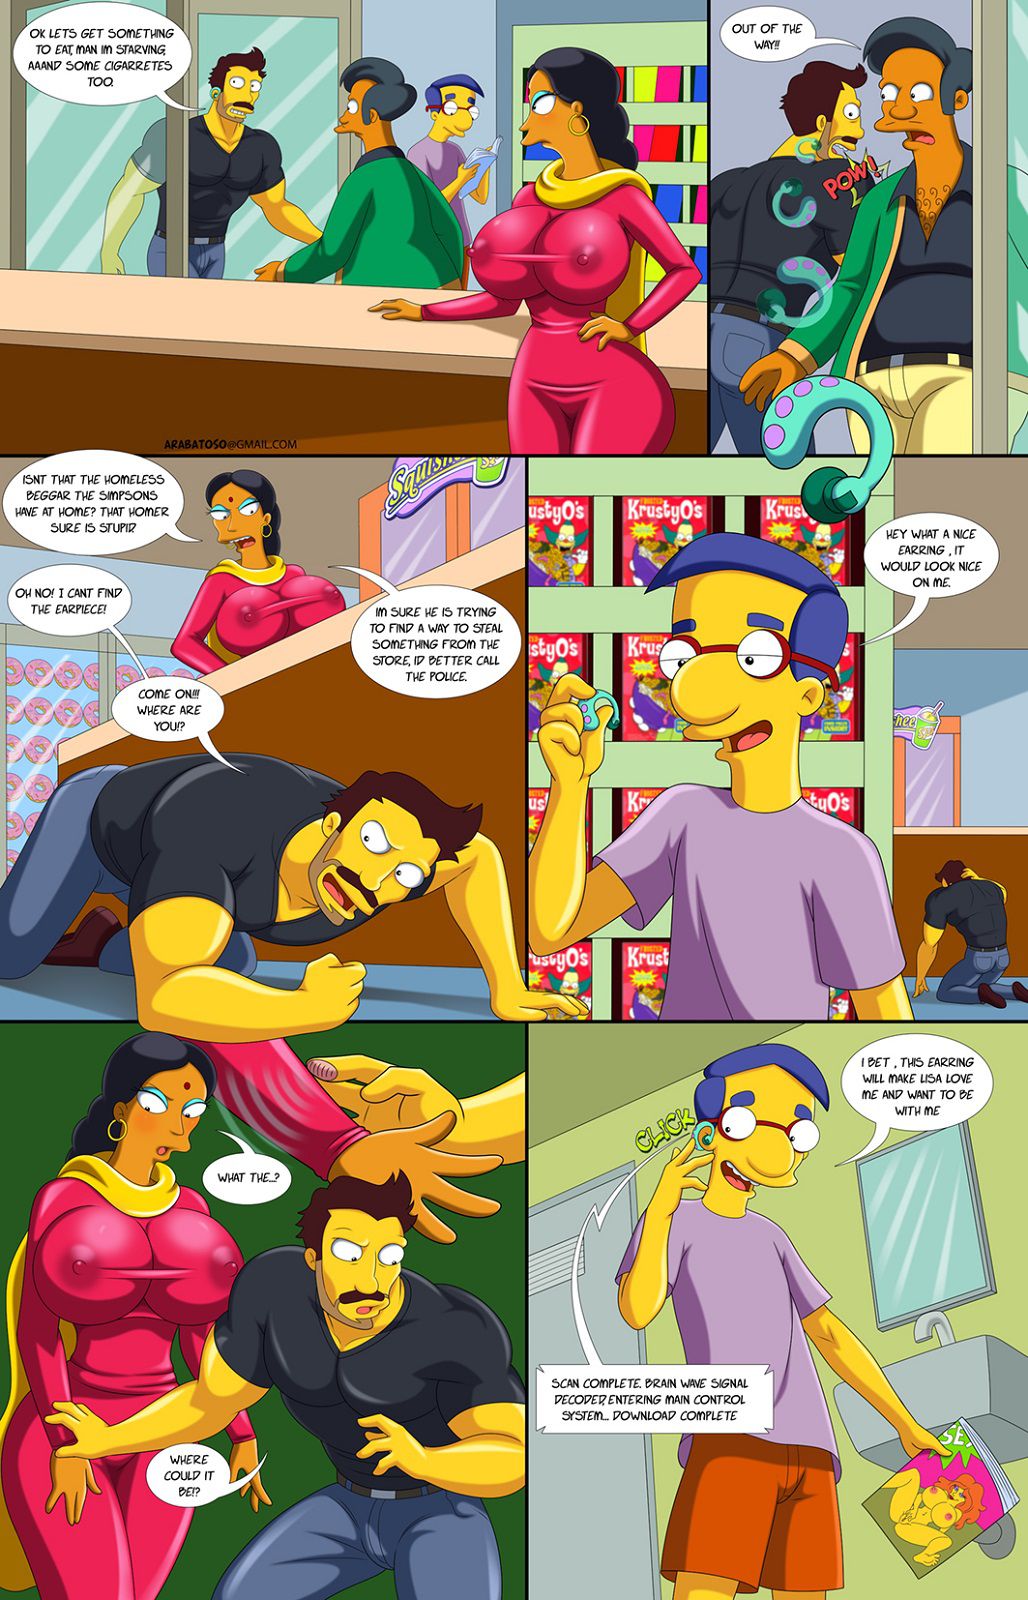 Darren's Adventure (The Simpsons) [Ongoing] 15